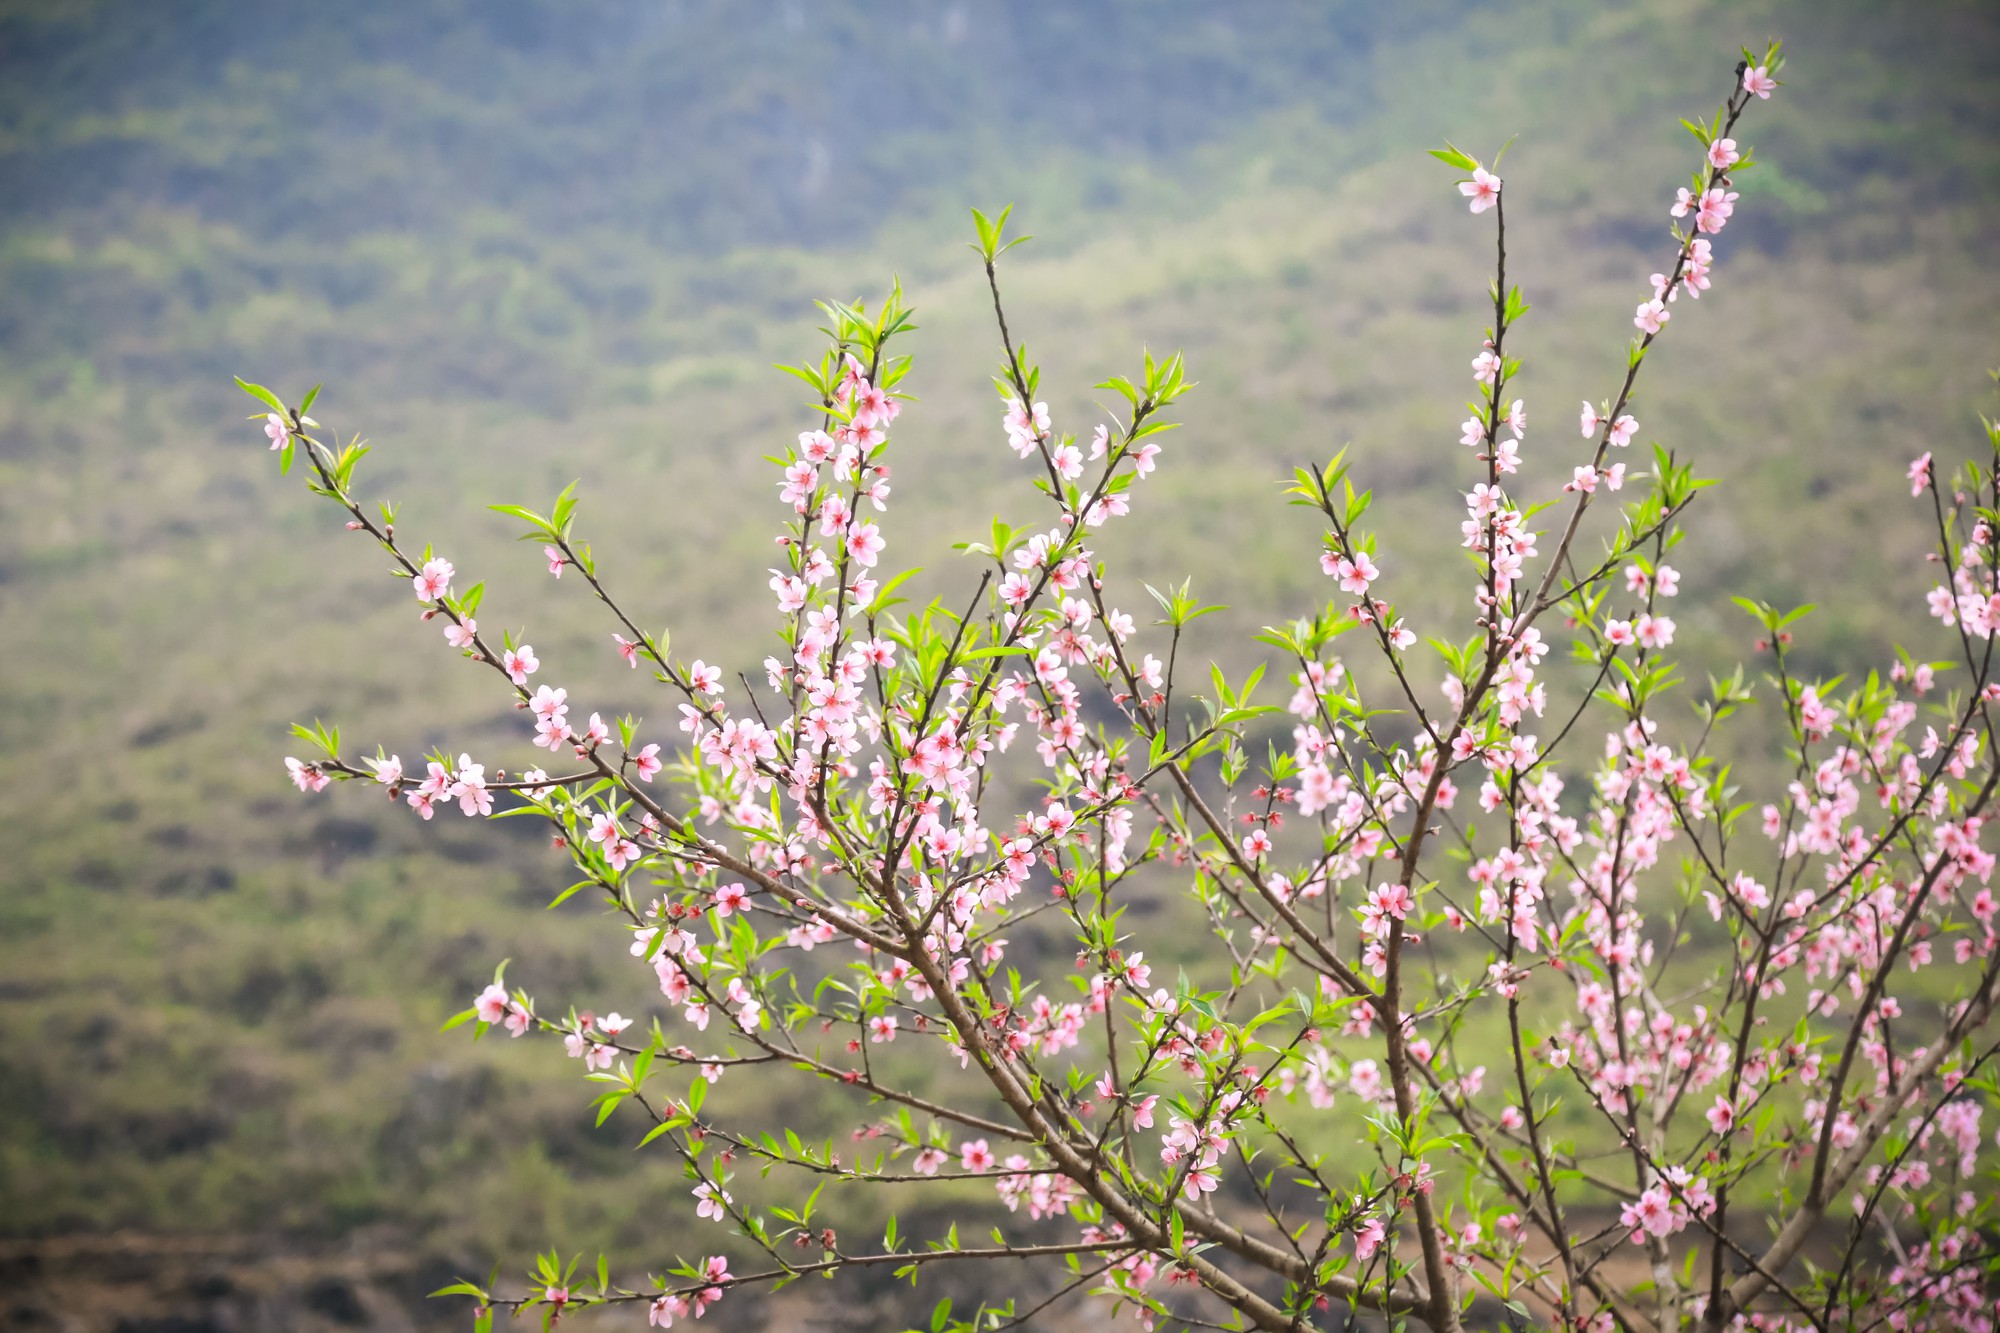 Bước vào bản làng Hà Giang vào mùa hoa đào, bạn sẽ được chào đón bởi những cành đào tươi tốt và rực rỡ. Tại đây, hoa đào không chỉ tạo nên một bức tranh tự nhiên đầy màu sắc mà còn mang trong mình niềm tự hào về văn hóa và truyền thống dân tộc.